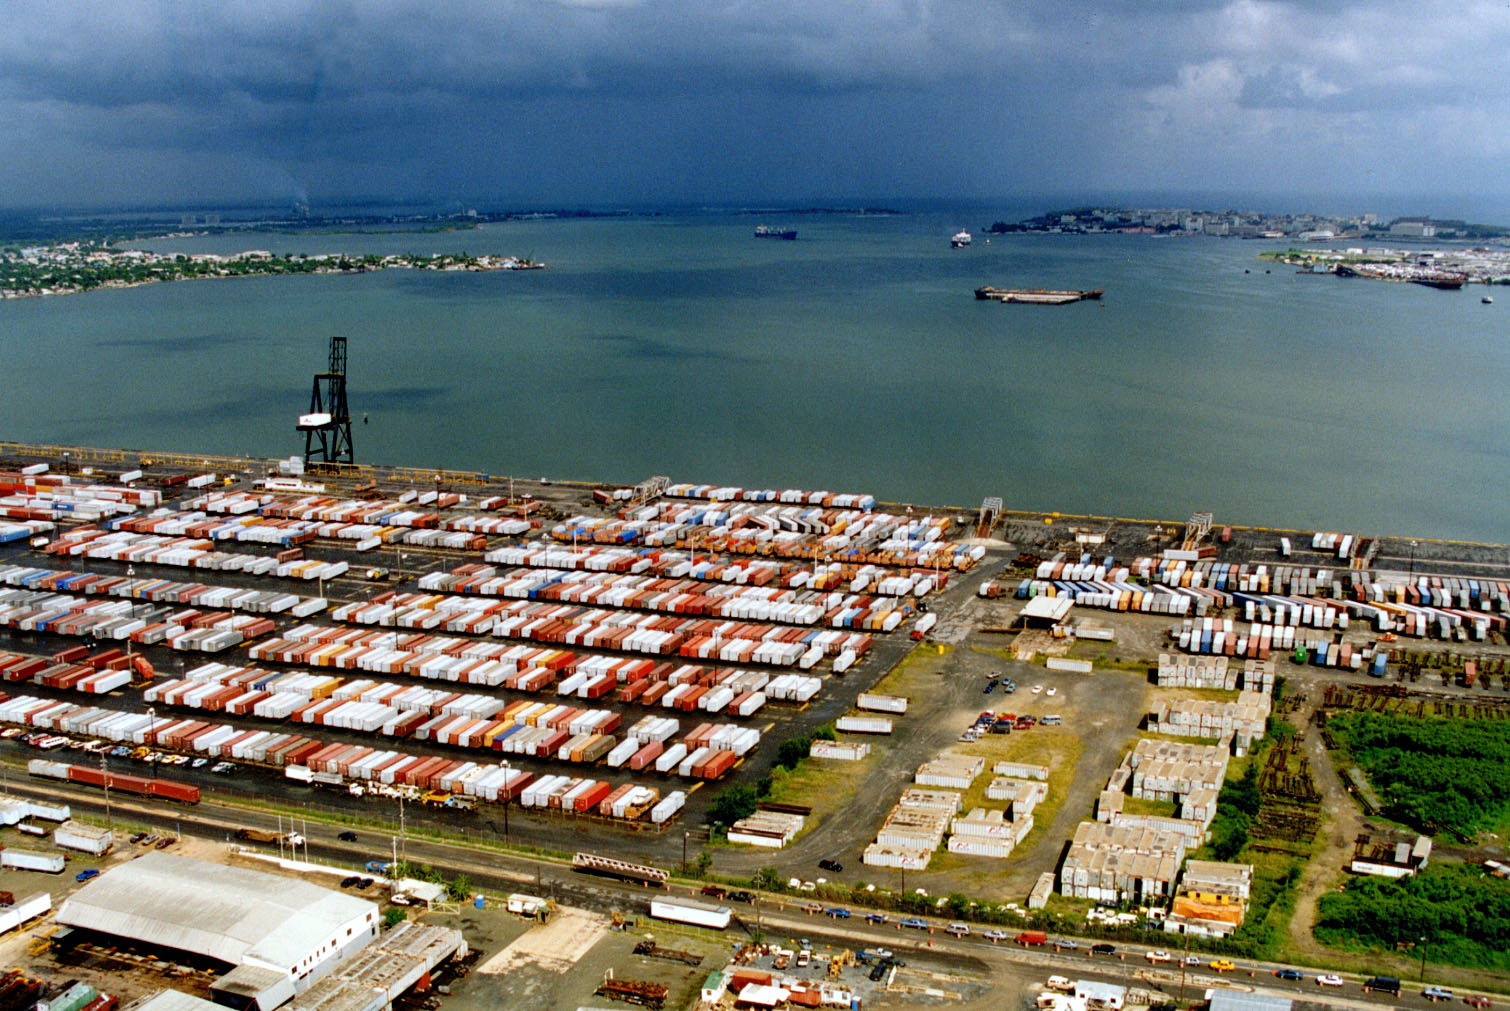 San Juan port with cargo